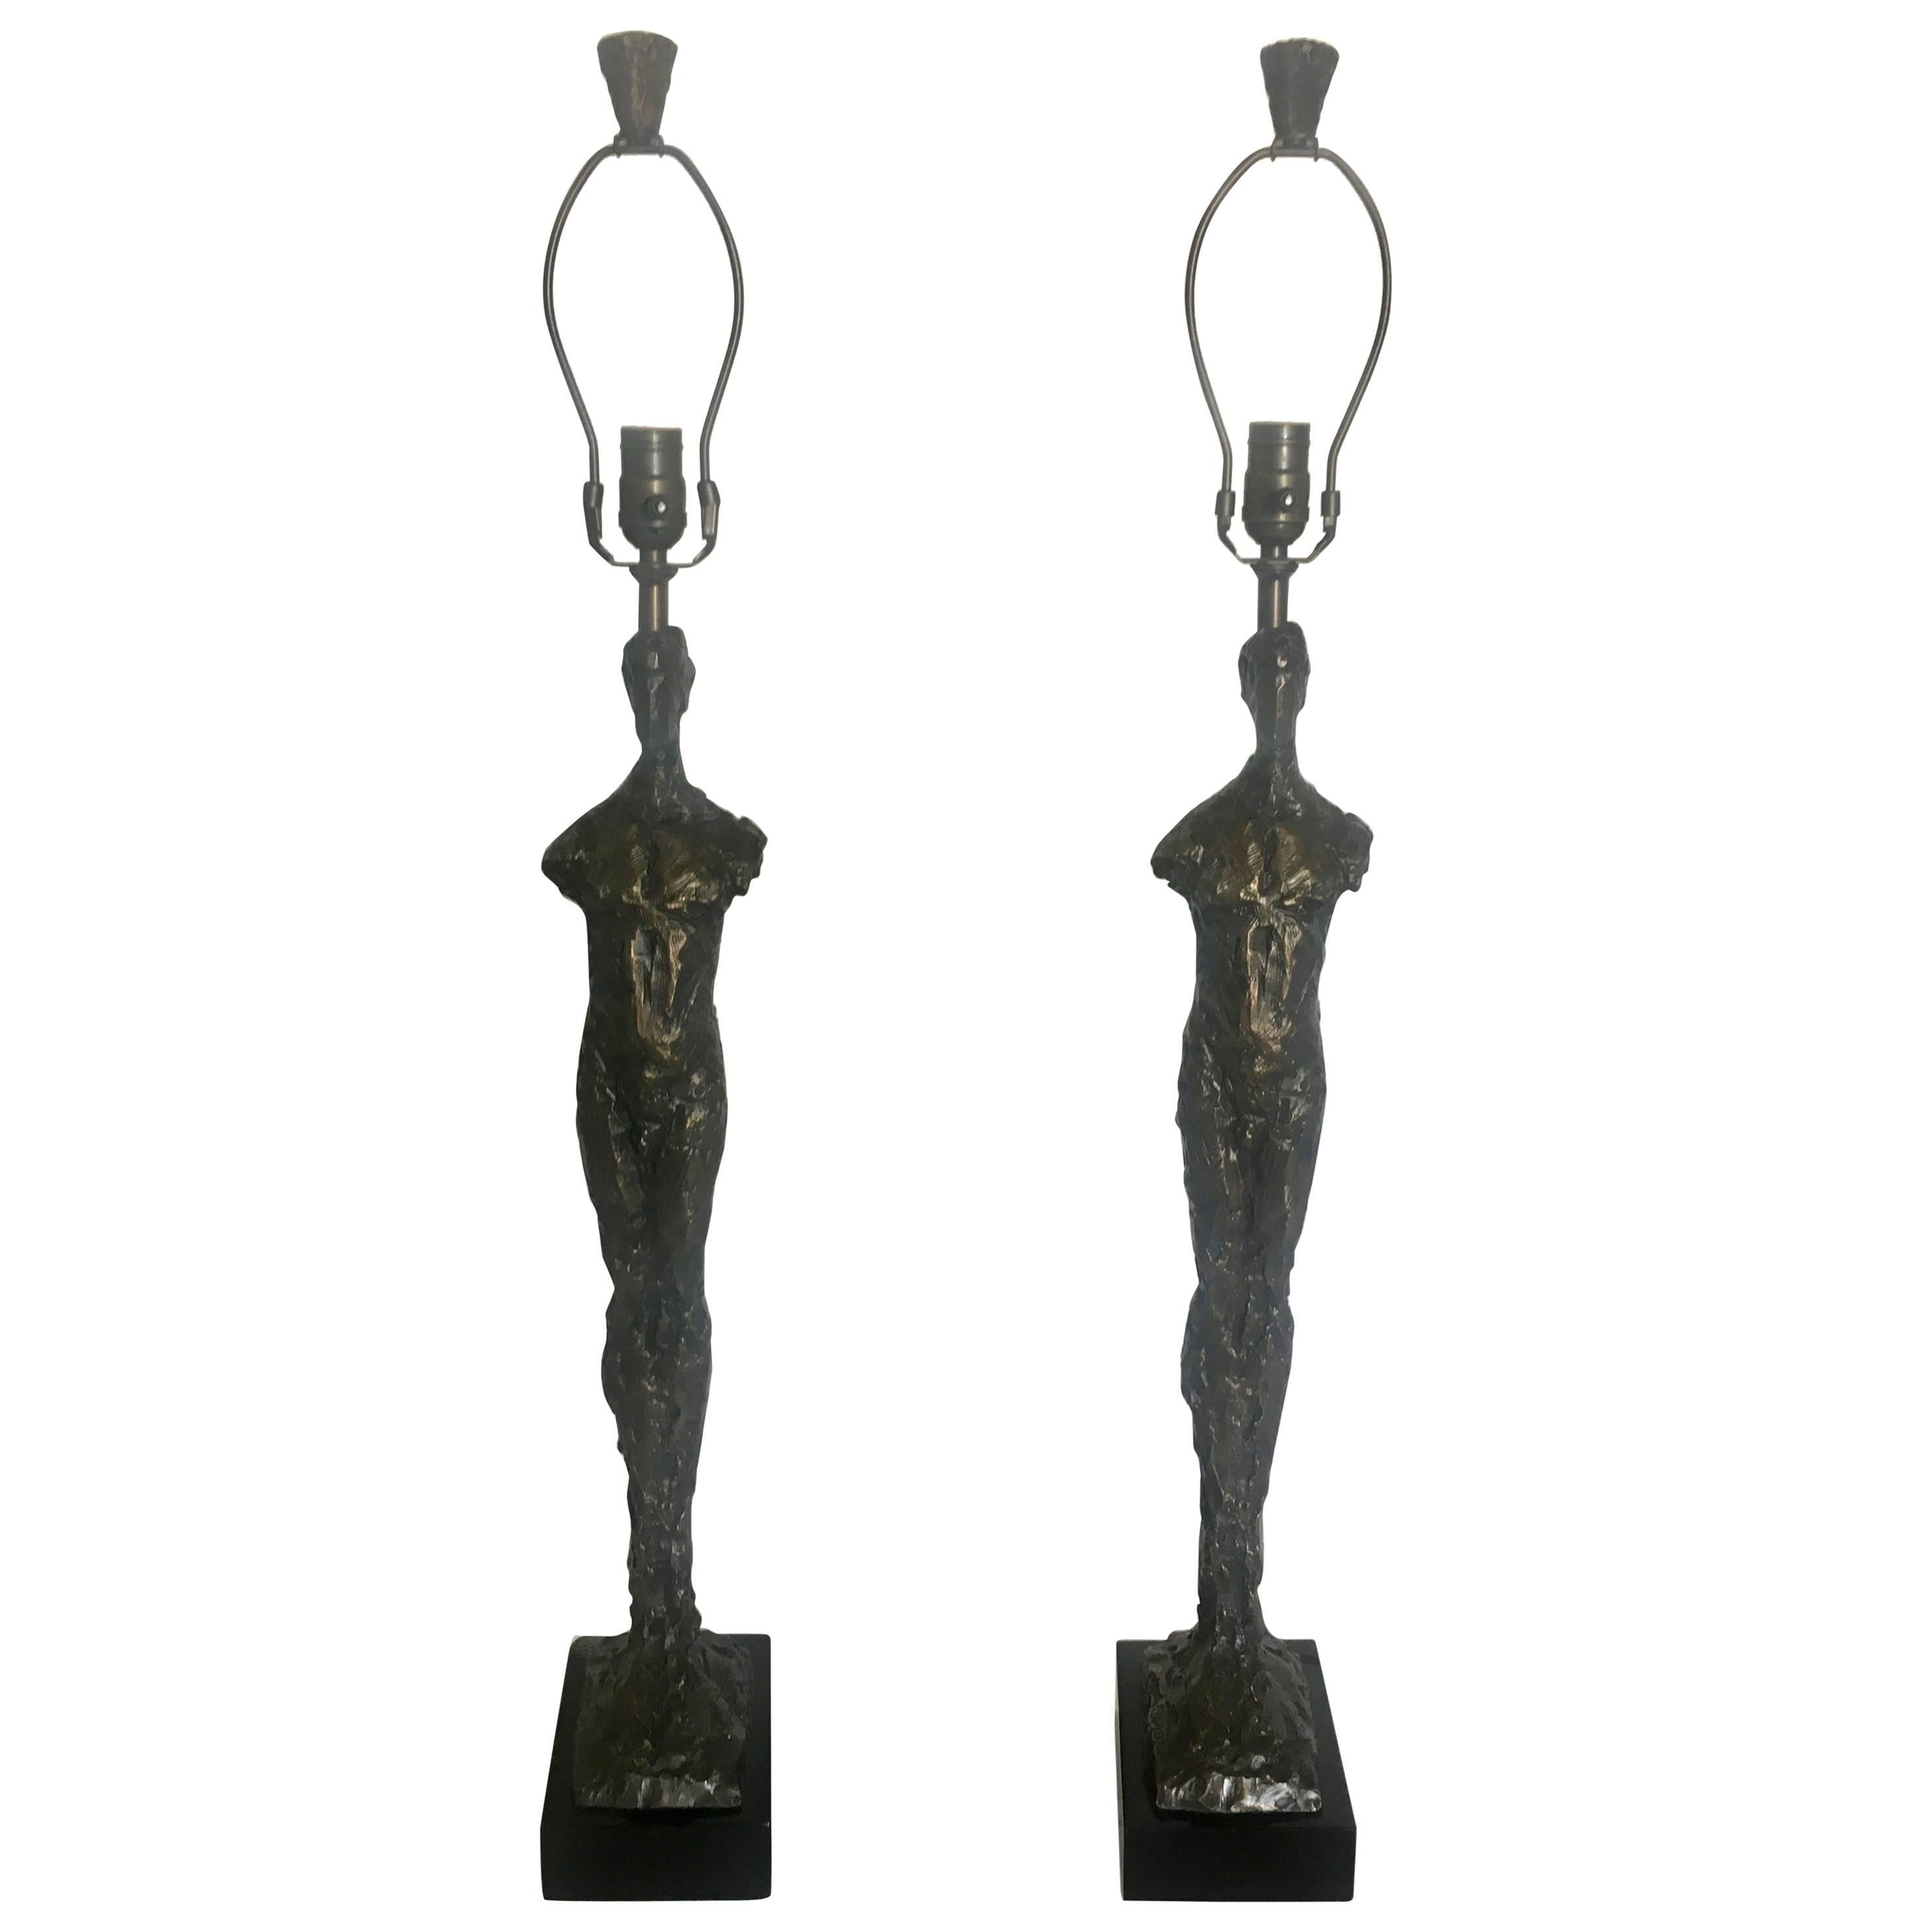 Pair of Sculptural Tom Corbin Bronze "Adam" Lamps with Bronze Finials